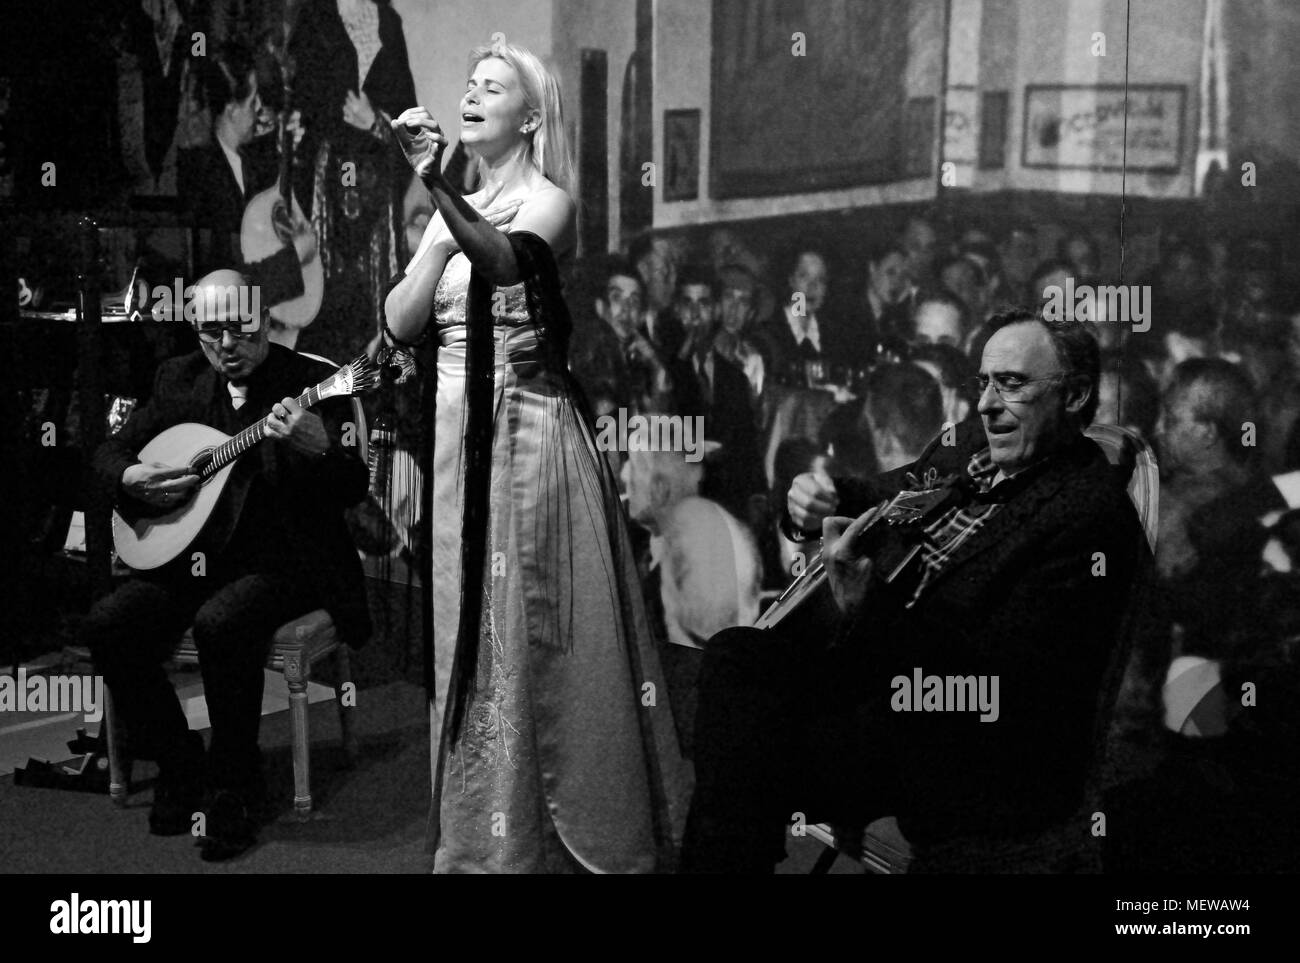 Image en noir et blanc avec la chanteuse de Fado et deux musiciens qui jouent de la guitare classique et guitare portugaise Banque D'Images